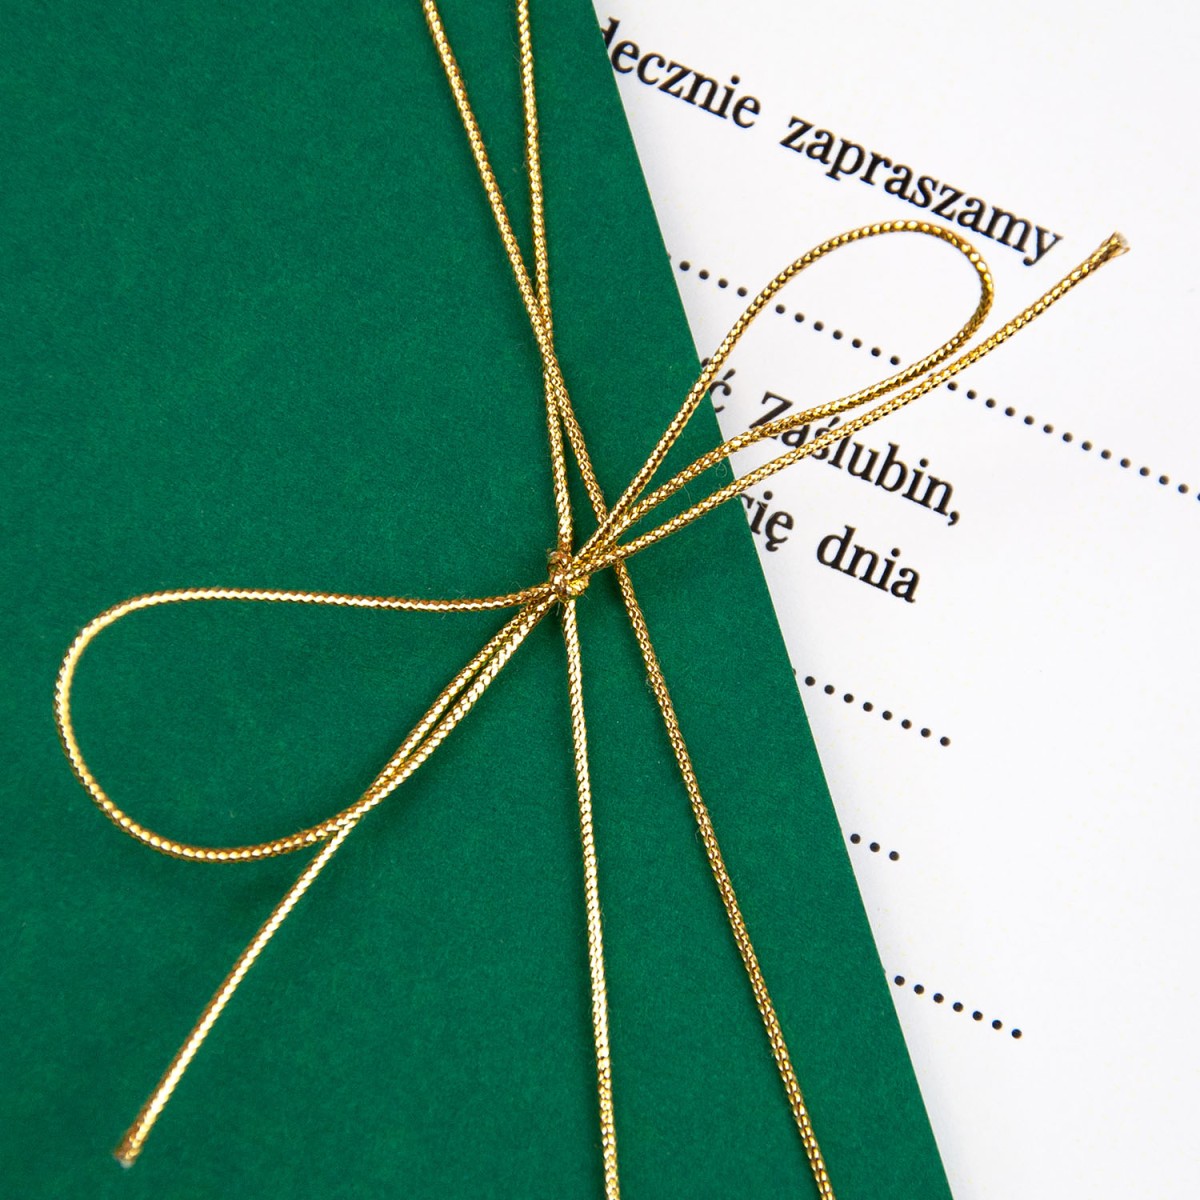 Zaproszenia Ślubne z elegancką kieszonką w kolorze zielonym i złotym sznureczkiem do własnoręcznego uzupełnienia - Green Pocket - LAST MINUTE